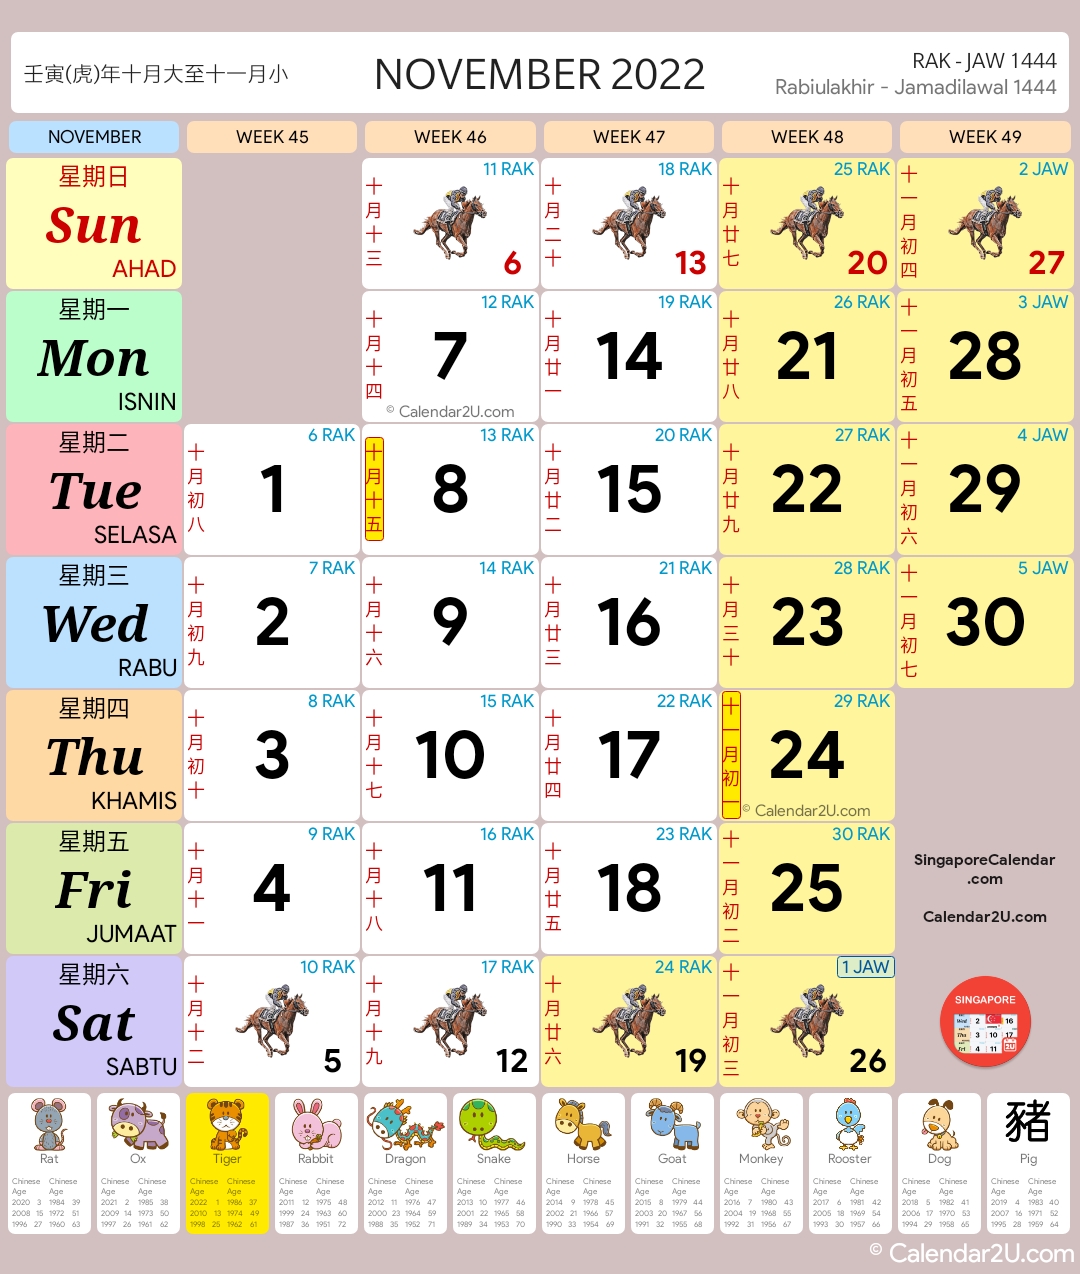 Singapore Calendar Nov 2022